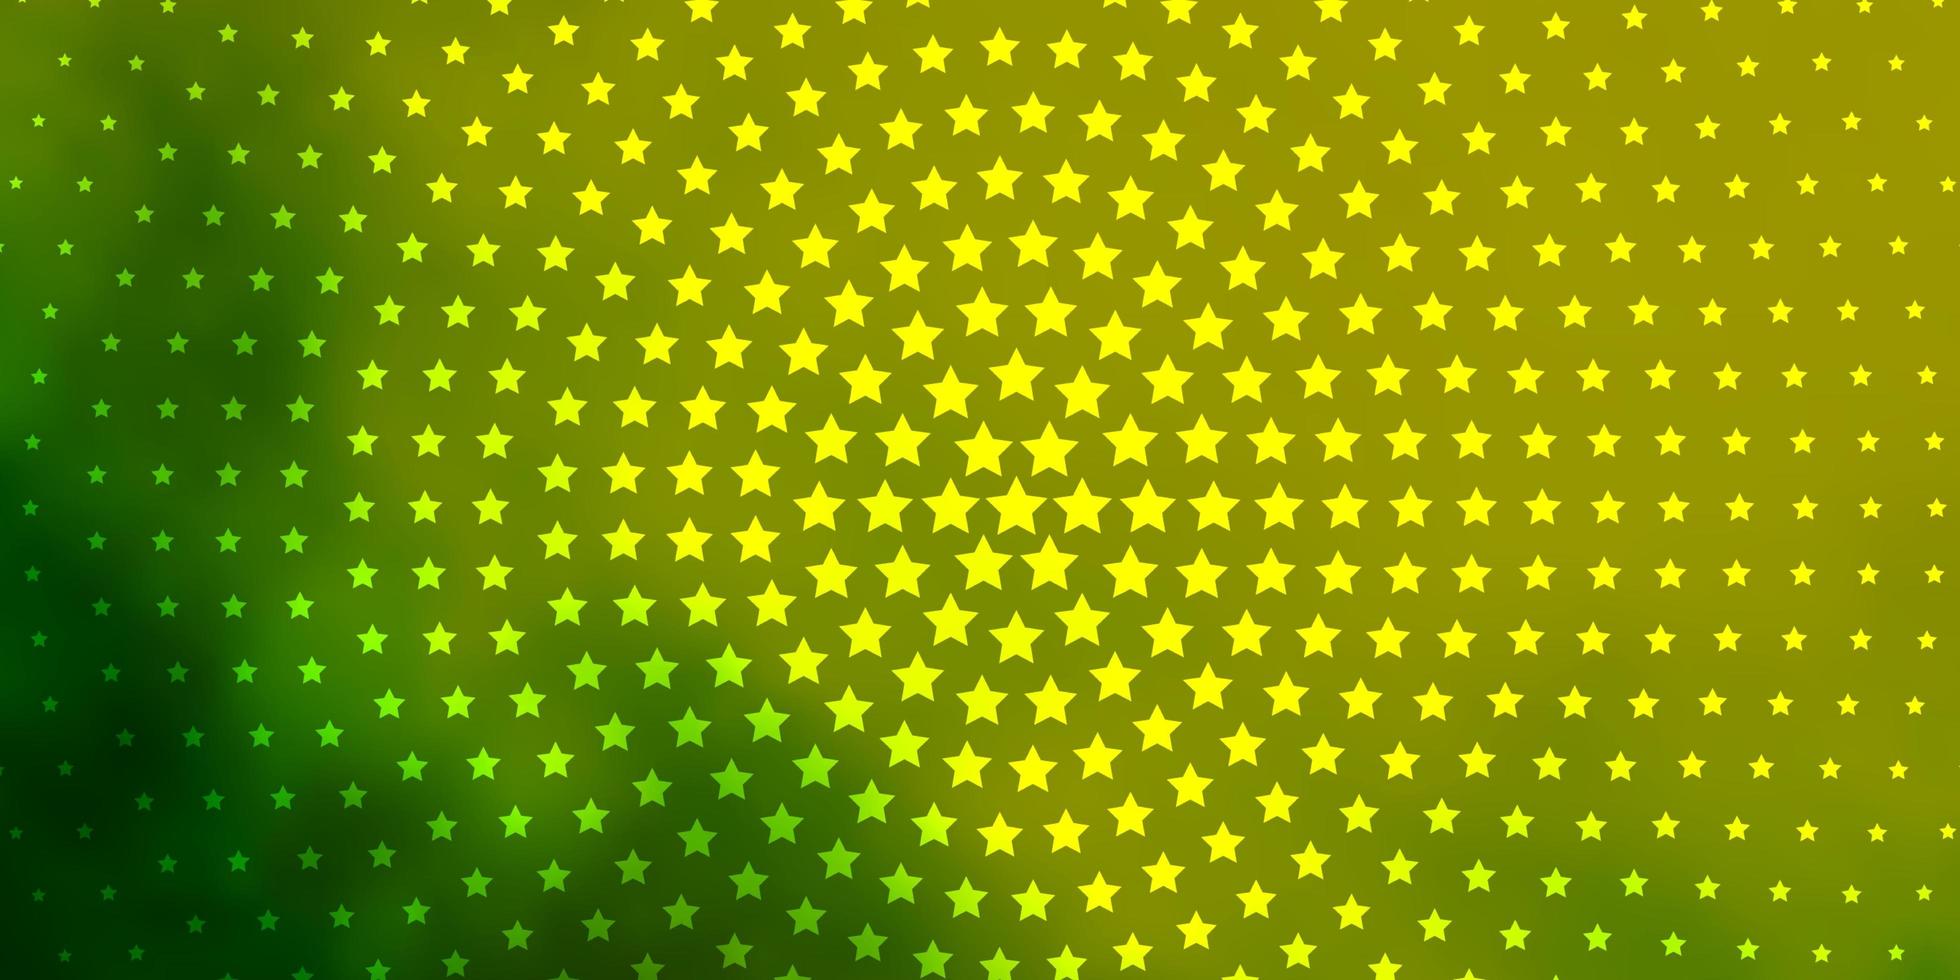 layout verde e amarelo com estrelas brilhantes. vetor